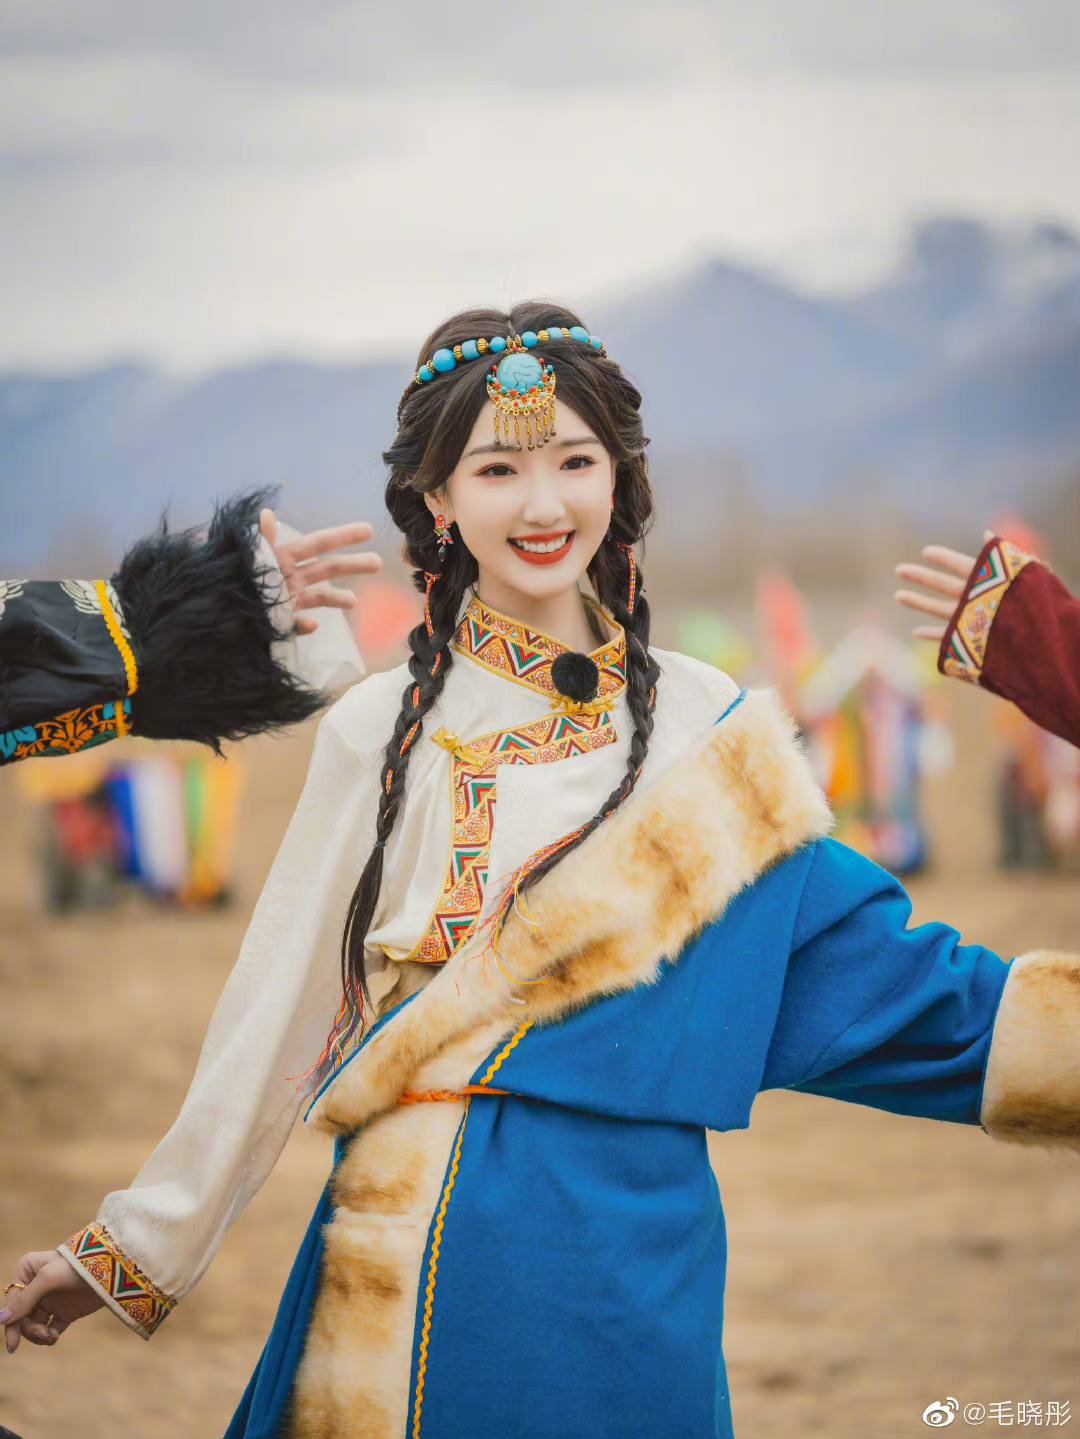 Mê mẩn trước nhan sắc ngọt ngào của Mao Hiểu Đồng khi hóa thân thành công chúa Tây Tạng - Ảnh 9